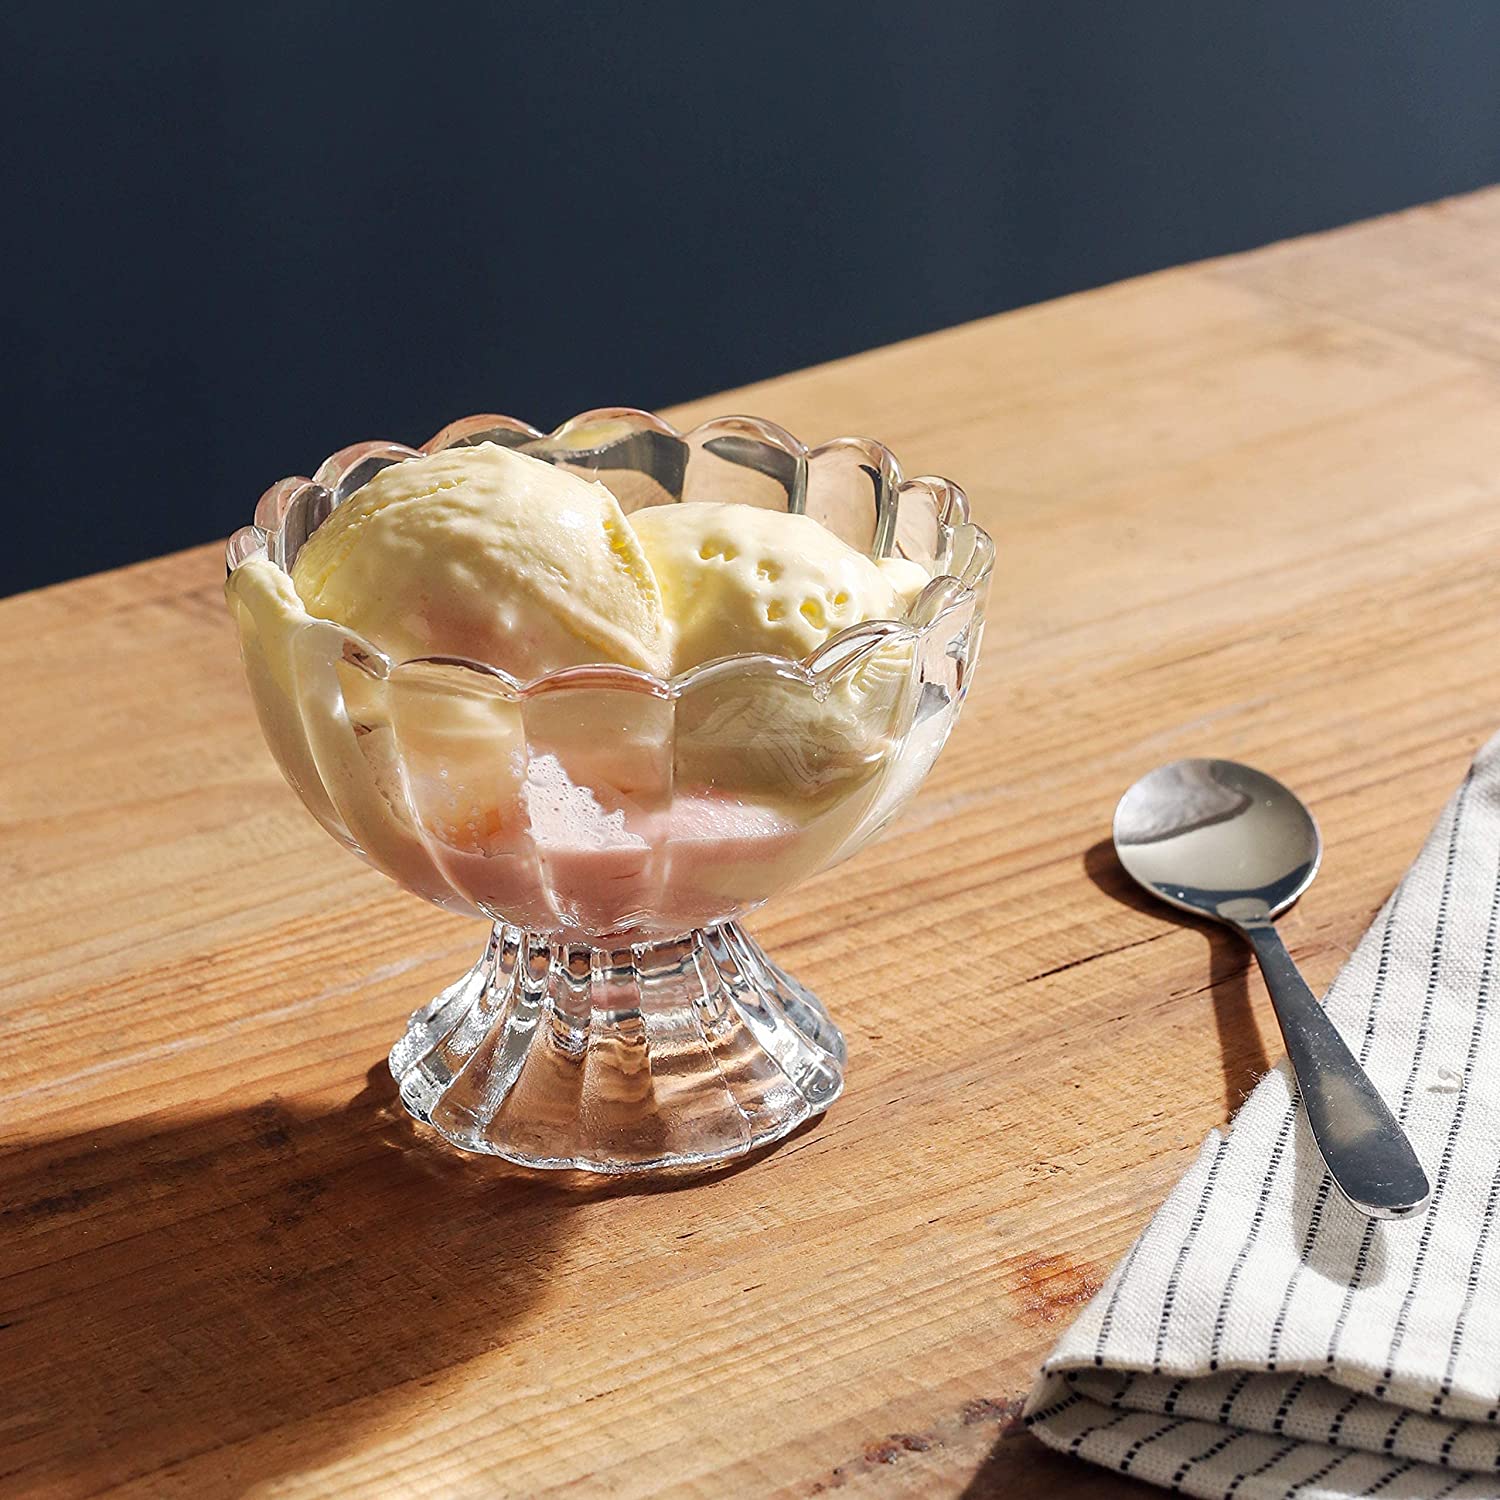 귀여운 투명 유리 디저트 그릇 아이스크림과 과일을 위한 유리 아이스크림 그릇05